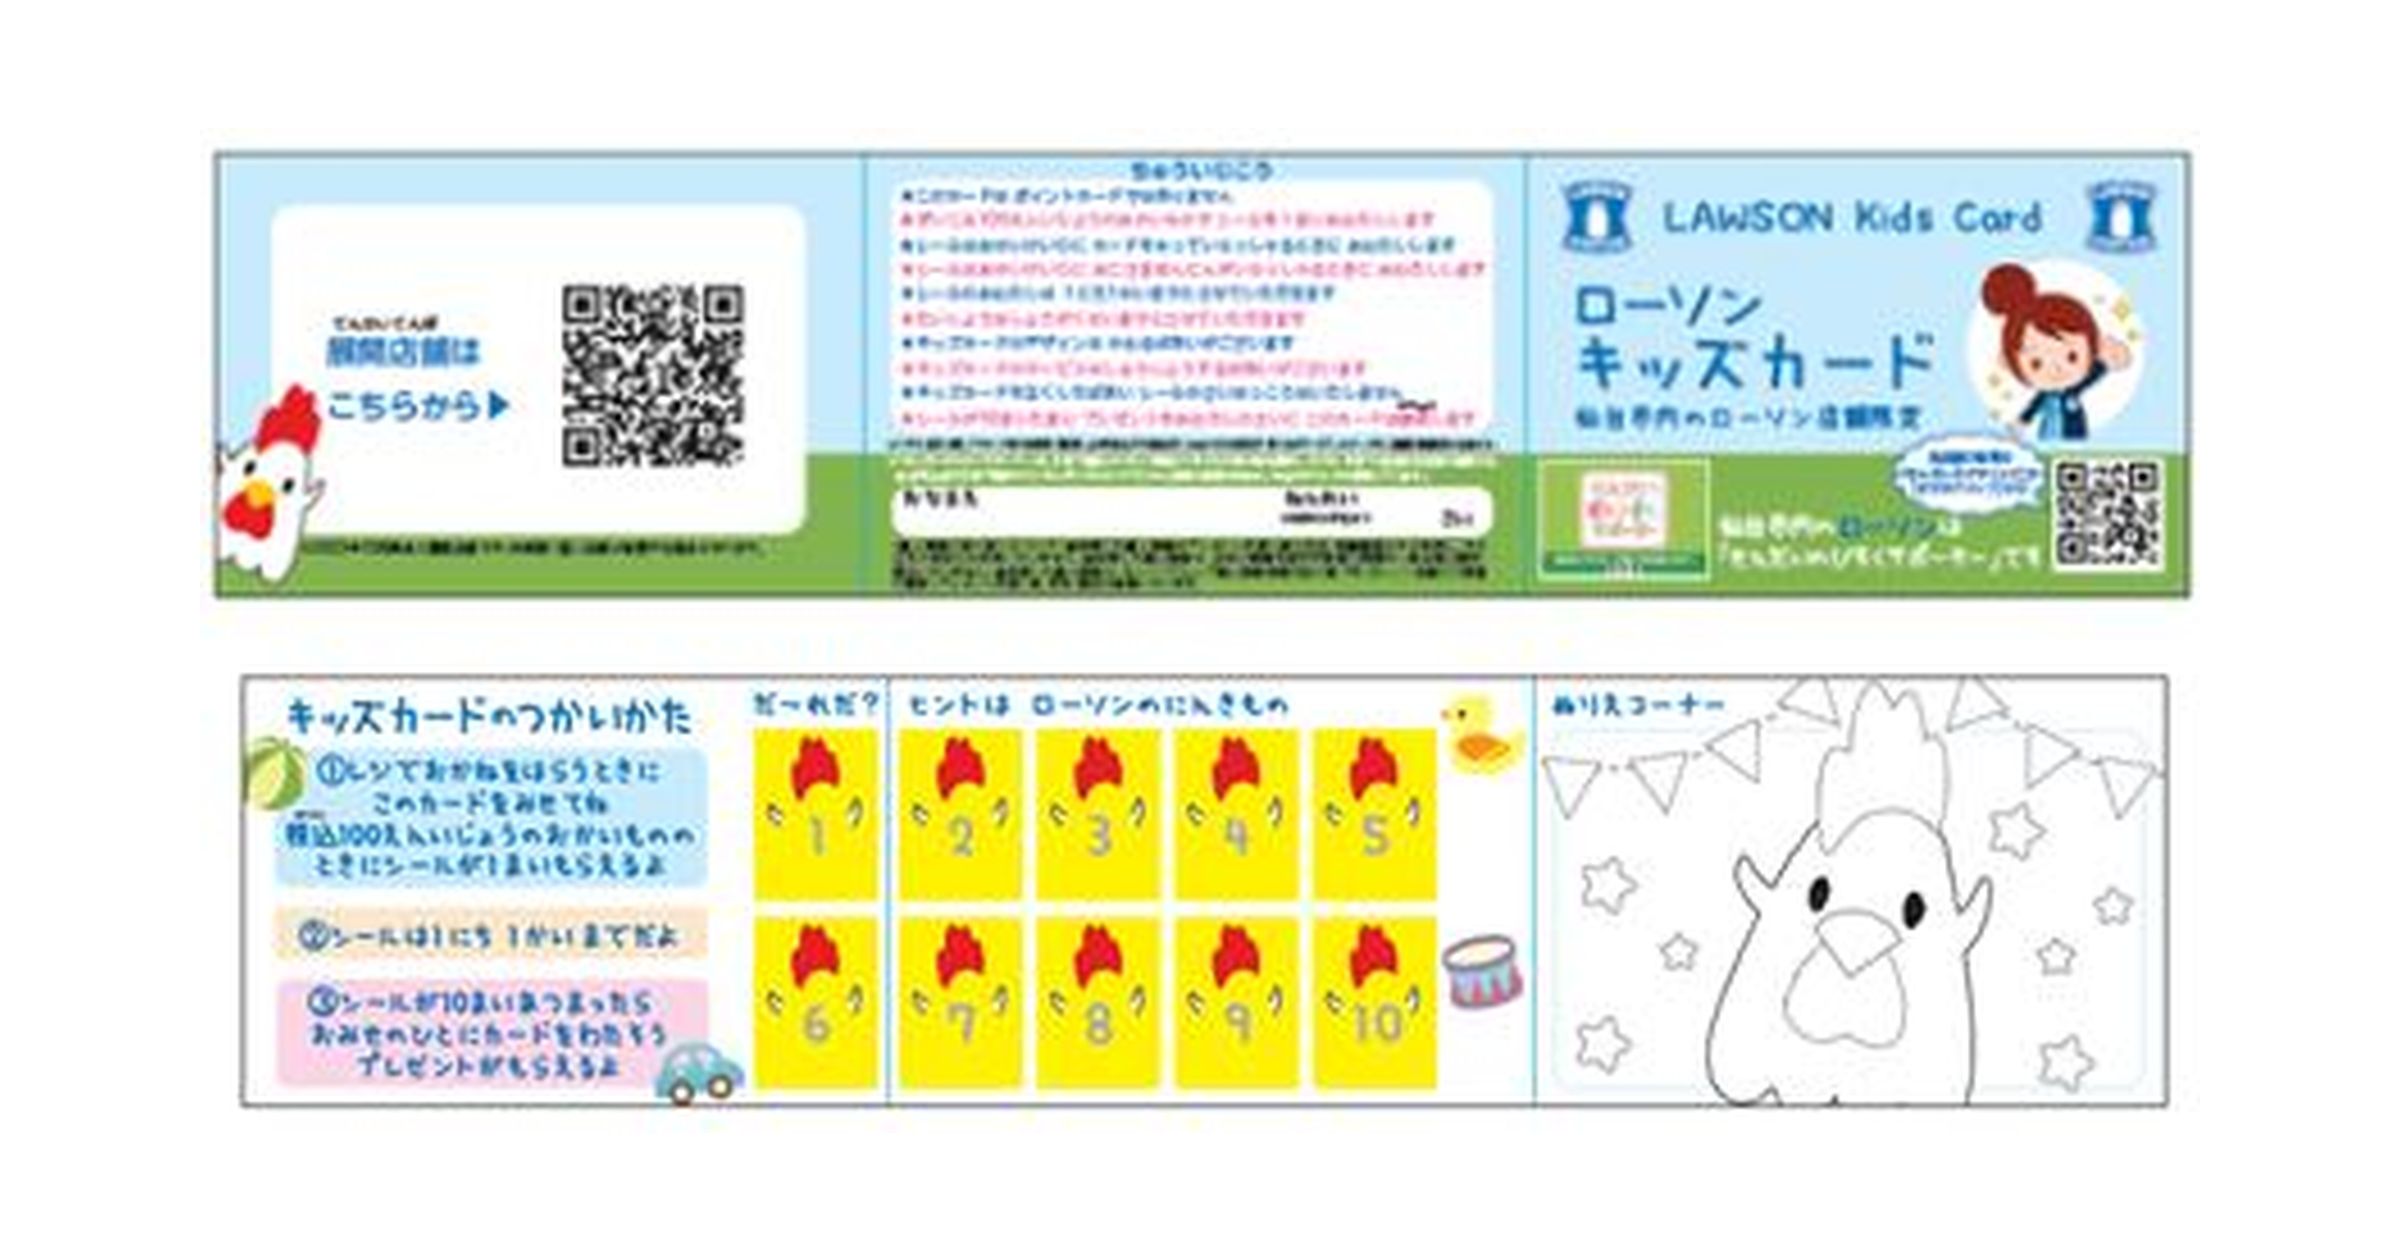 宮城県仙台市のローソン、「ローソンキッズカード」を本格導入